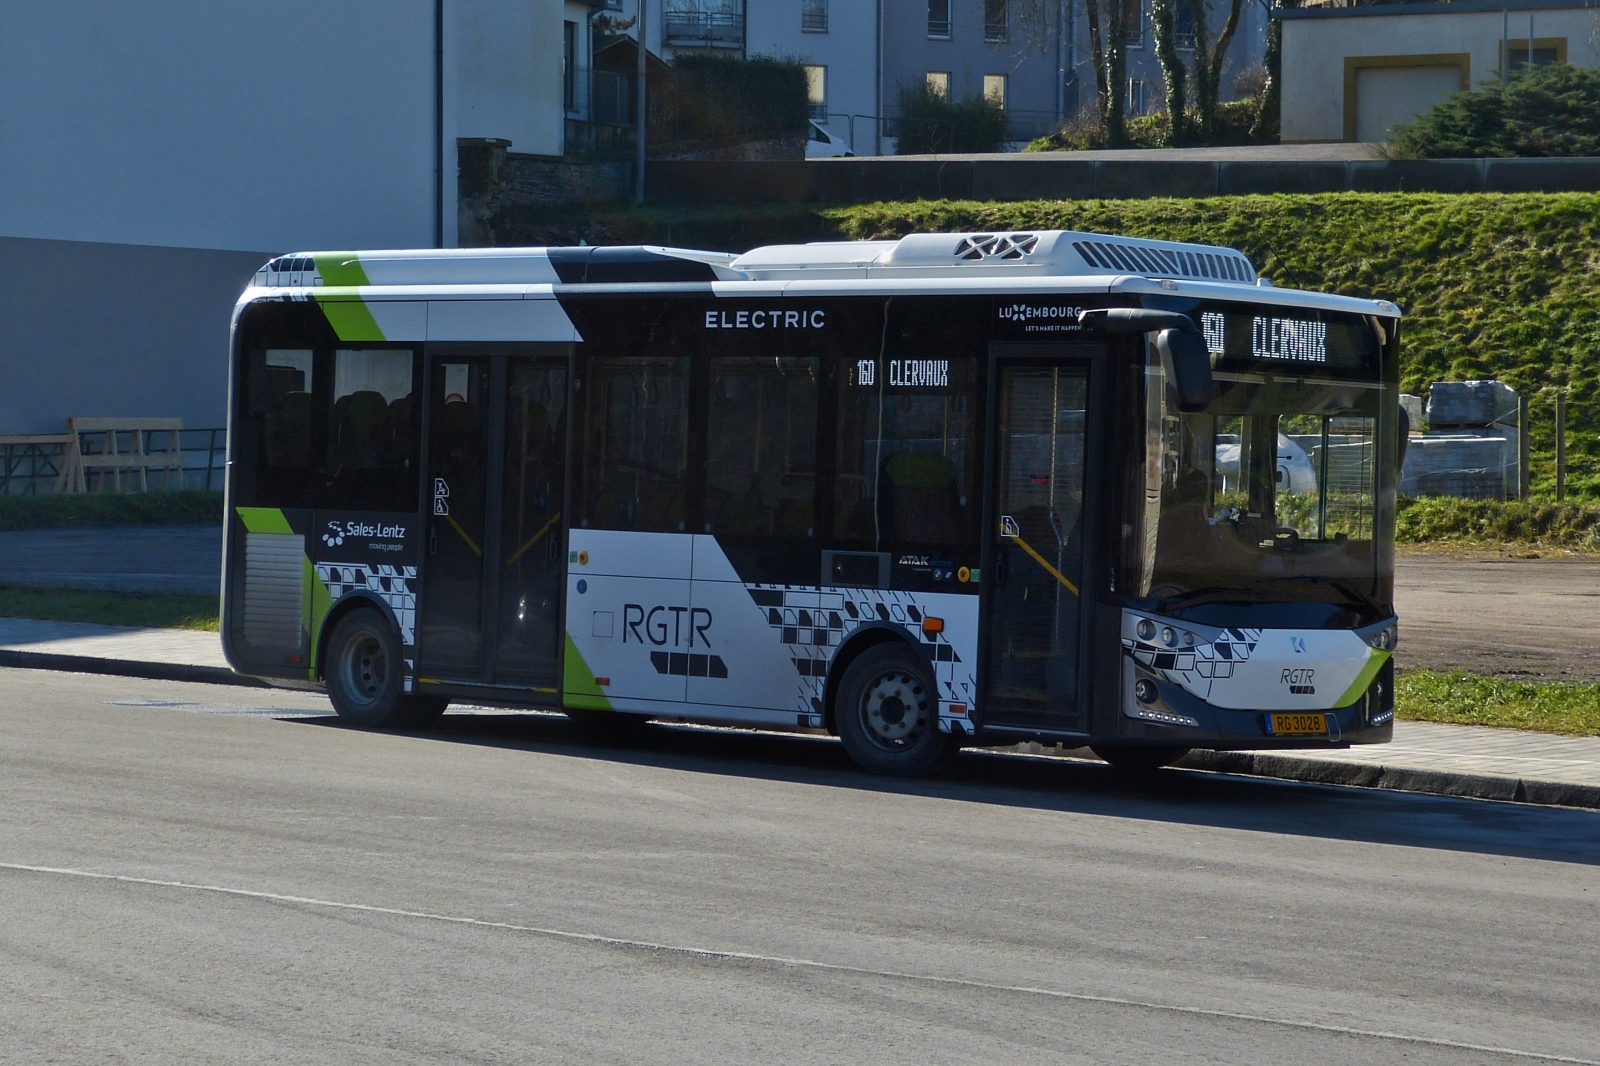 RG 3028, Karsan Atak, des Busunternehmens Sales Lentz, aufgenommen am Busbahnhof in Clervaux. Mit diesem Bus fuhren wir bei unsere Rundfahrt mit verschiedenen Bussen im Norden von Luxemburg am 13.02.2023 von Clervaux zurück nach Erpeldange.